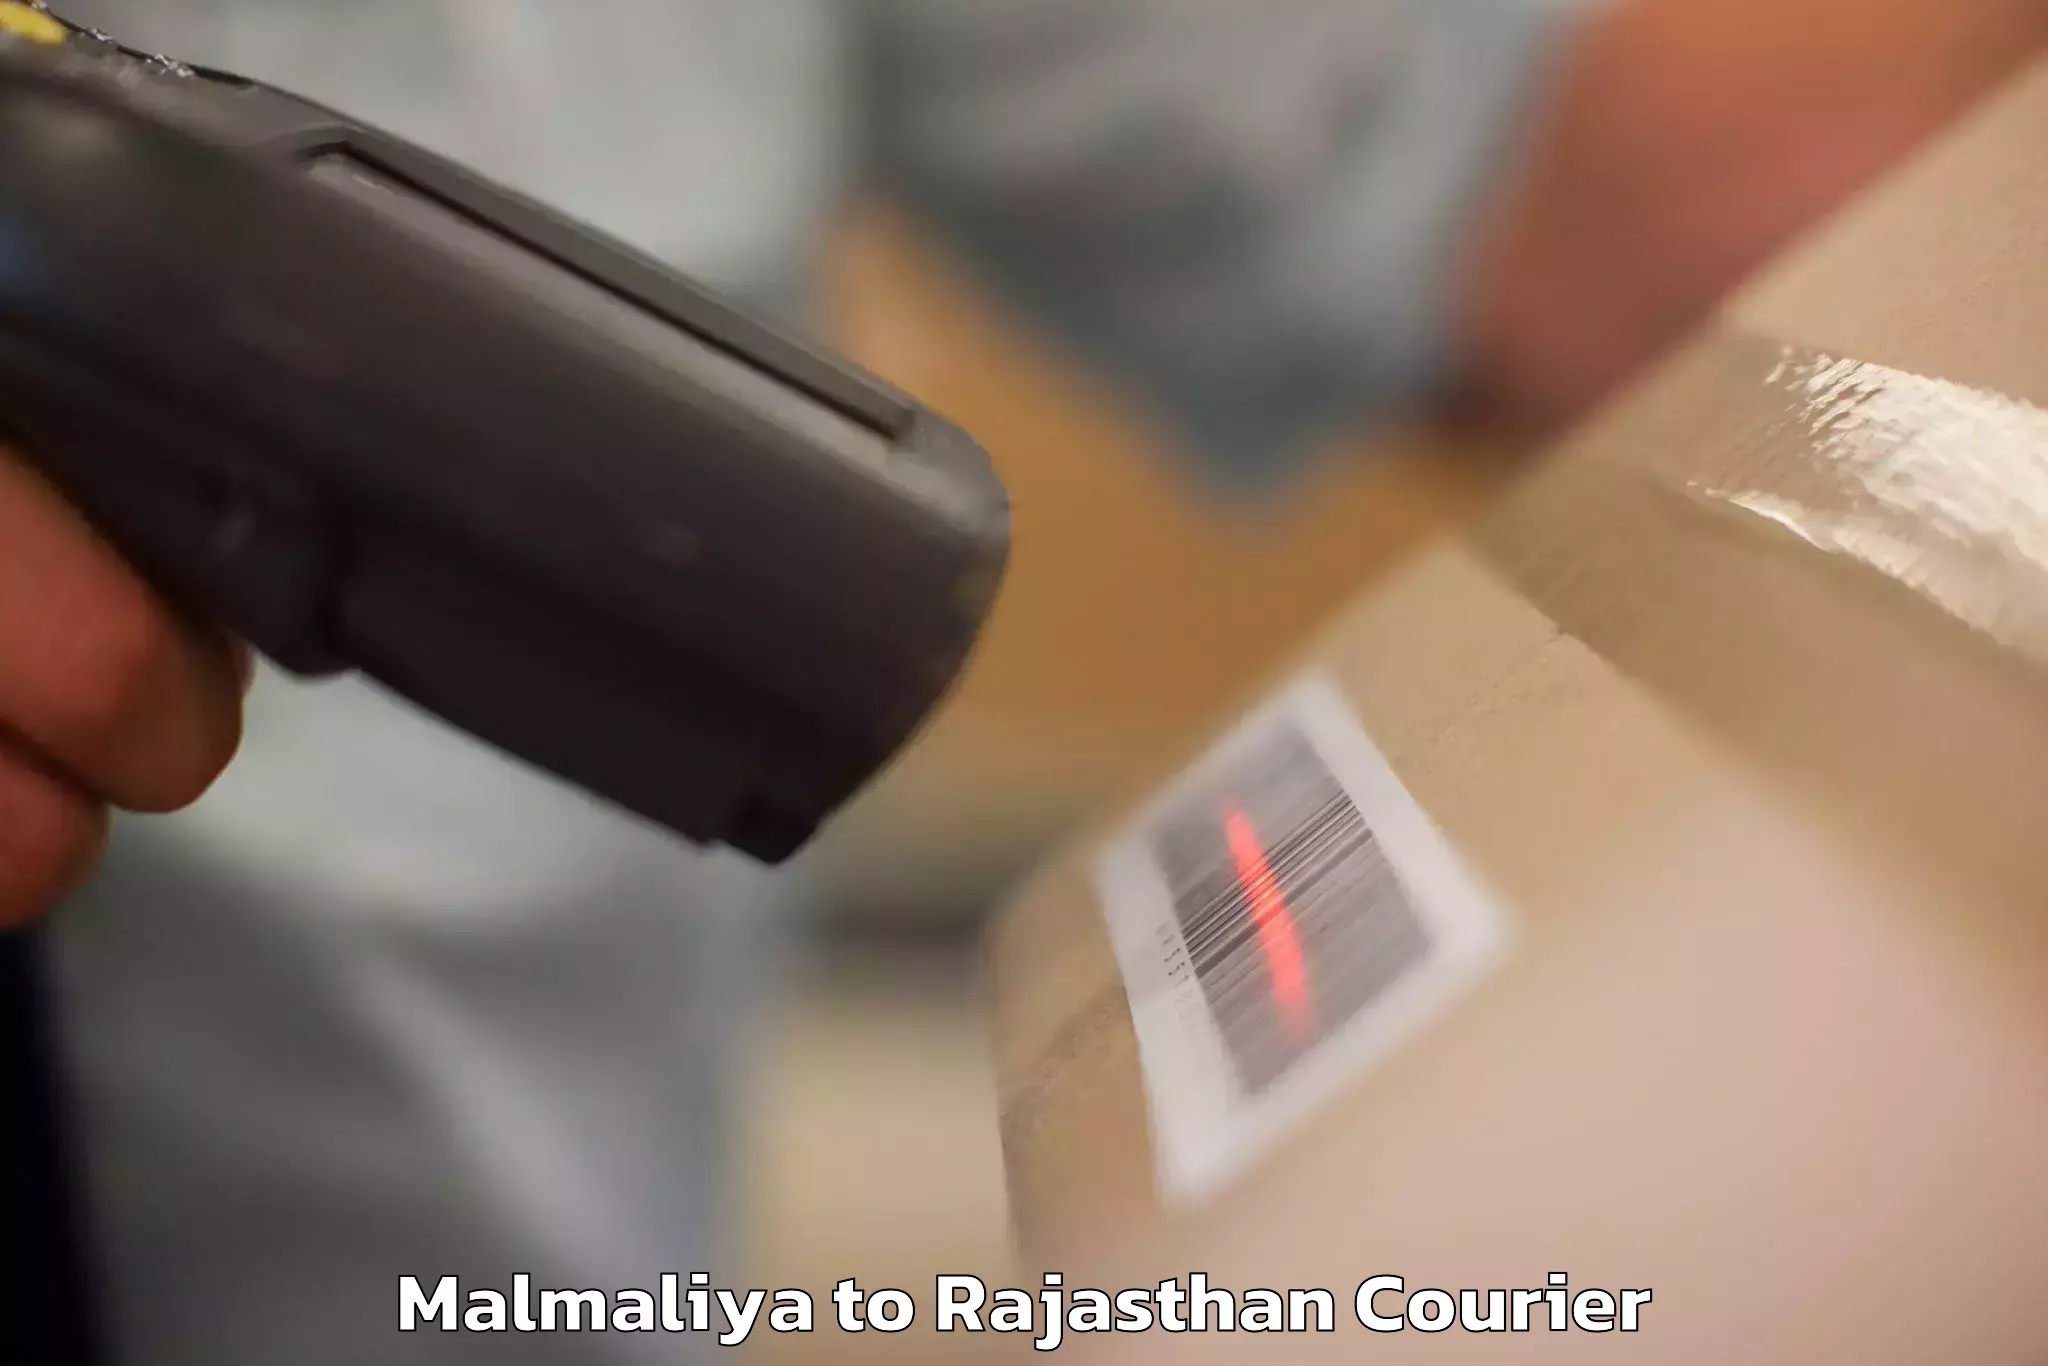 High-quality baggage shipment Malmaliya to Yathalakunta